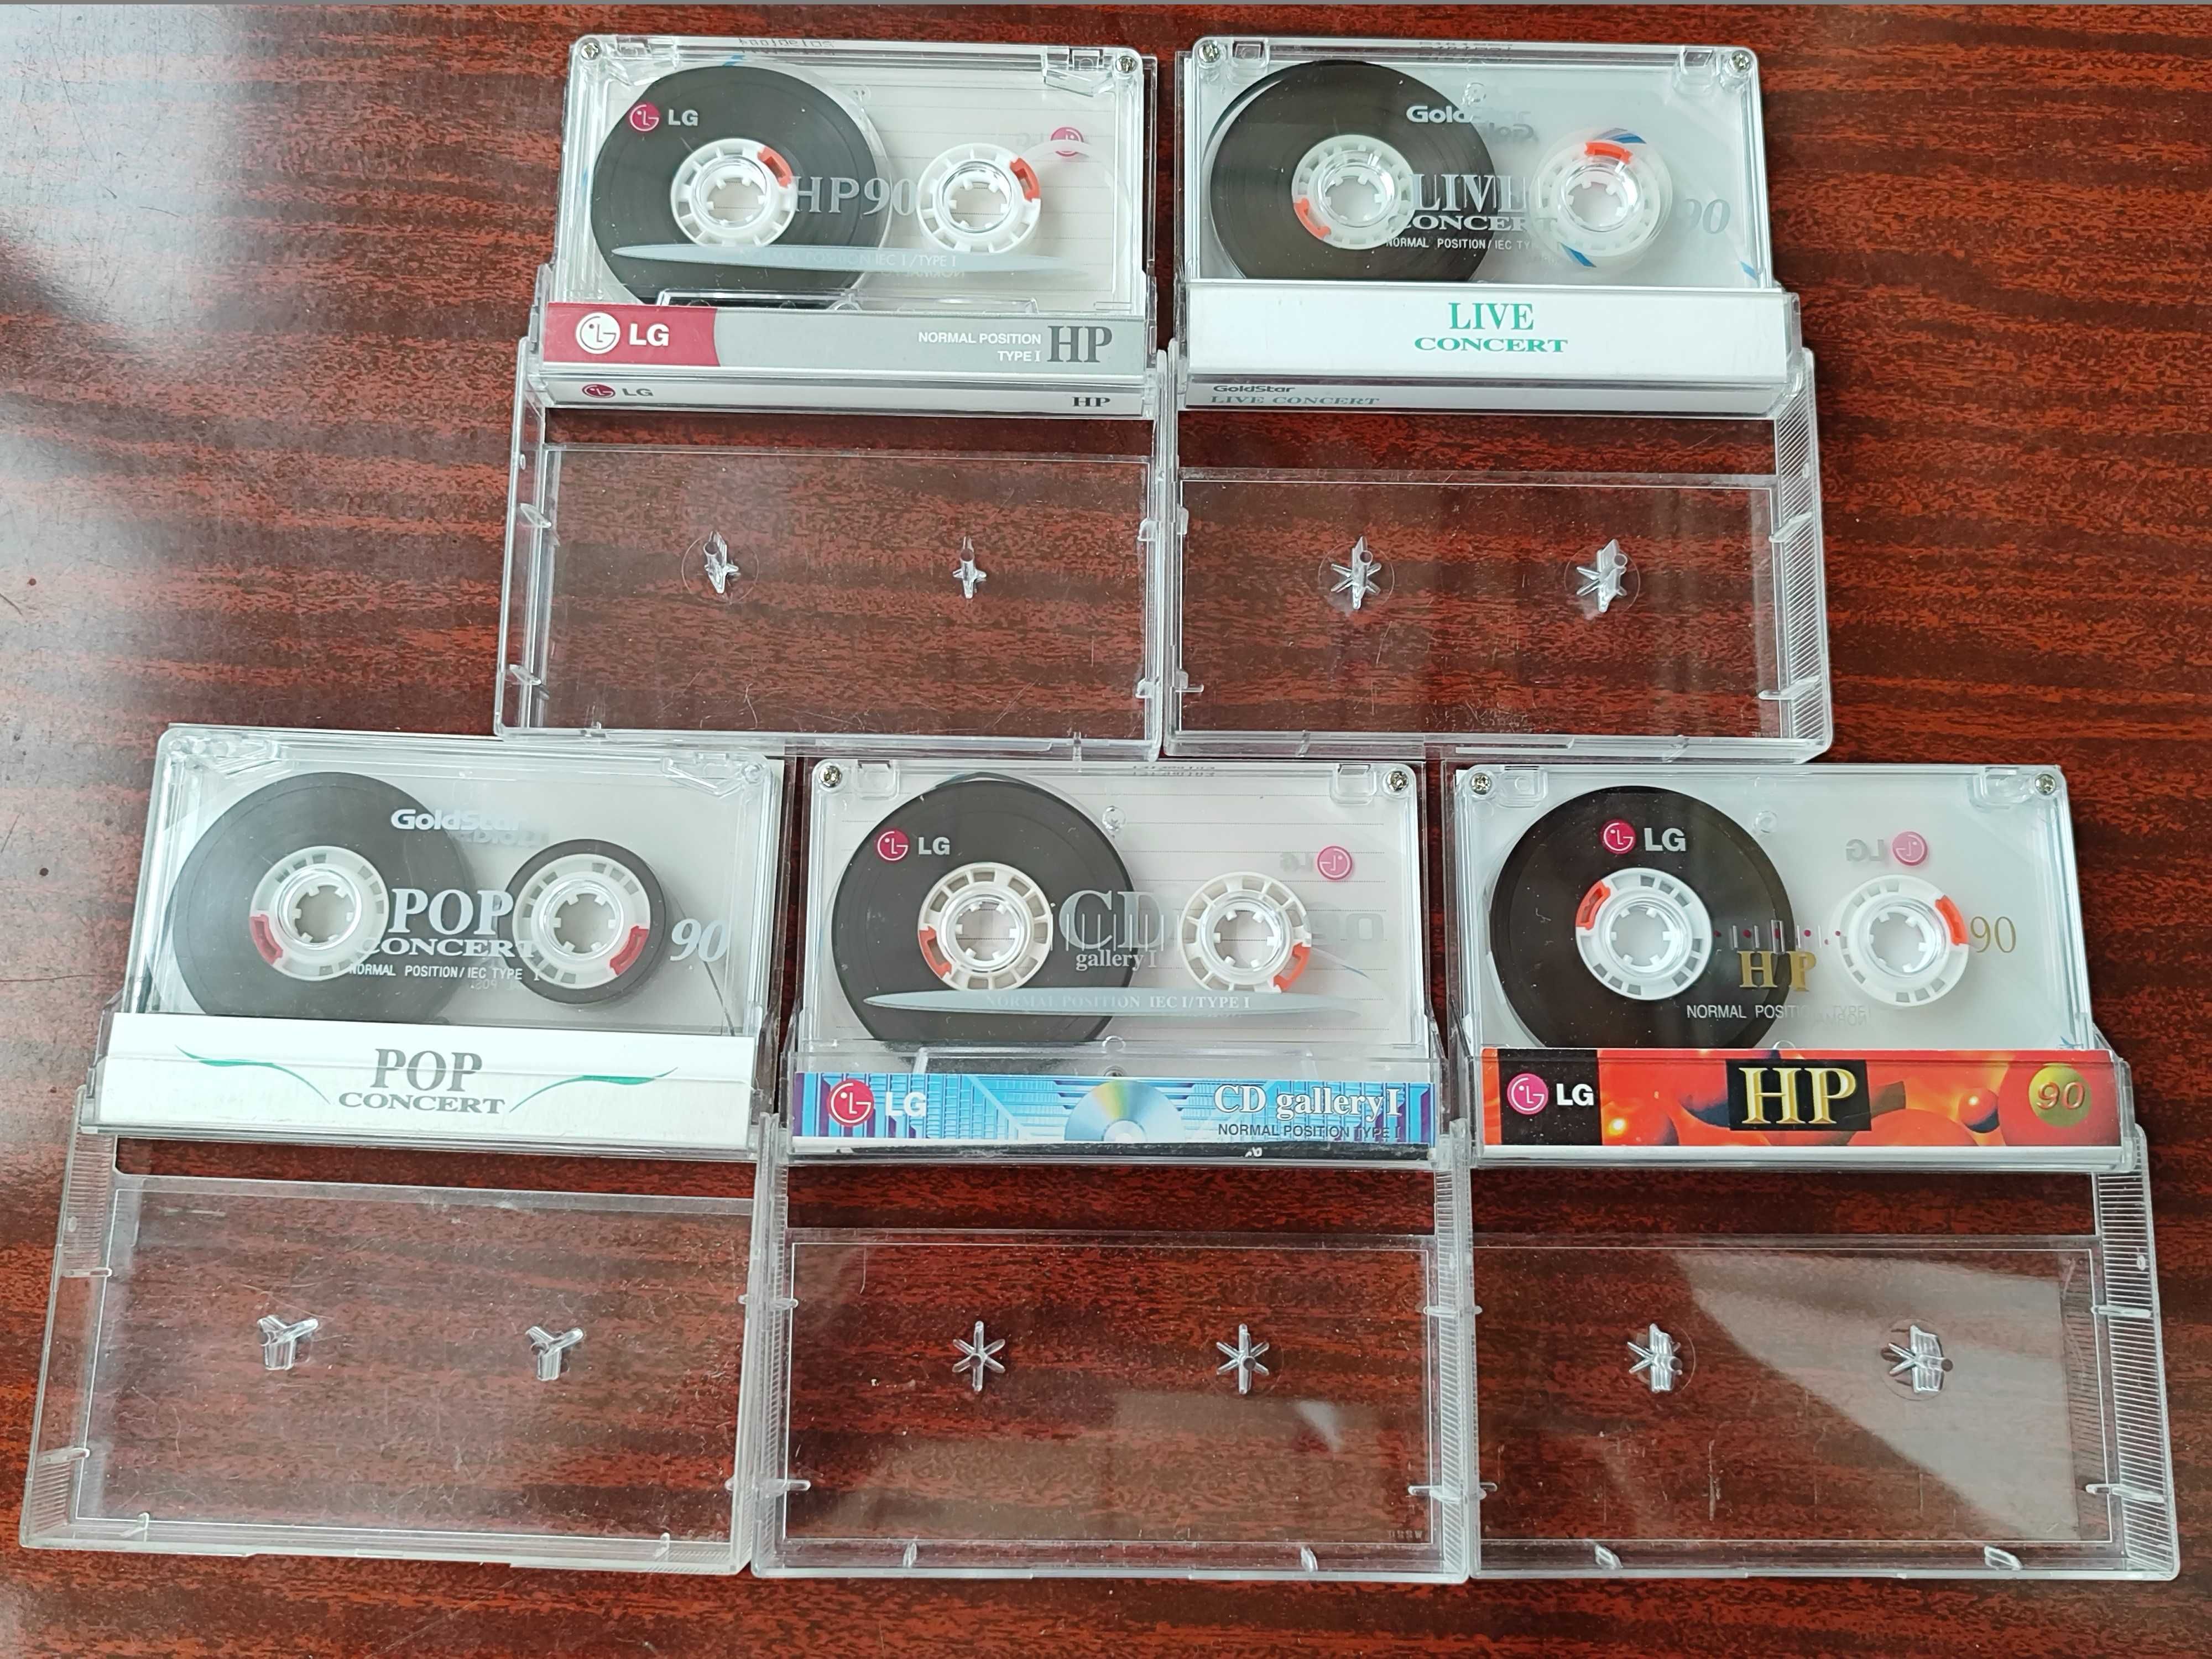 Аудиокассеты GoldStar HD 90, Live, POP, LG HP90, LG CD galleryI 90